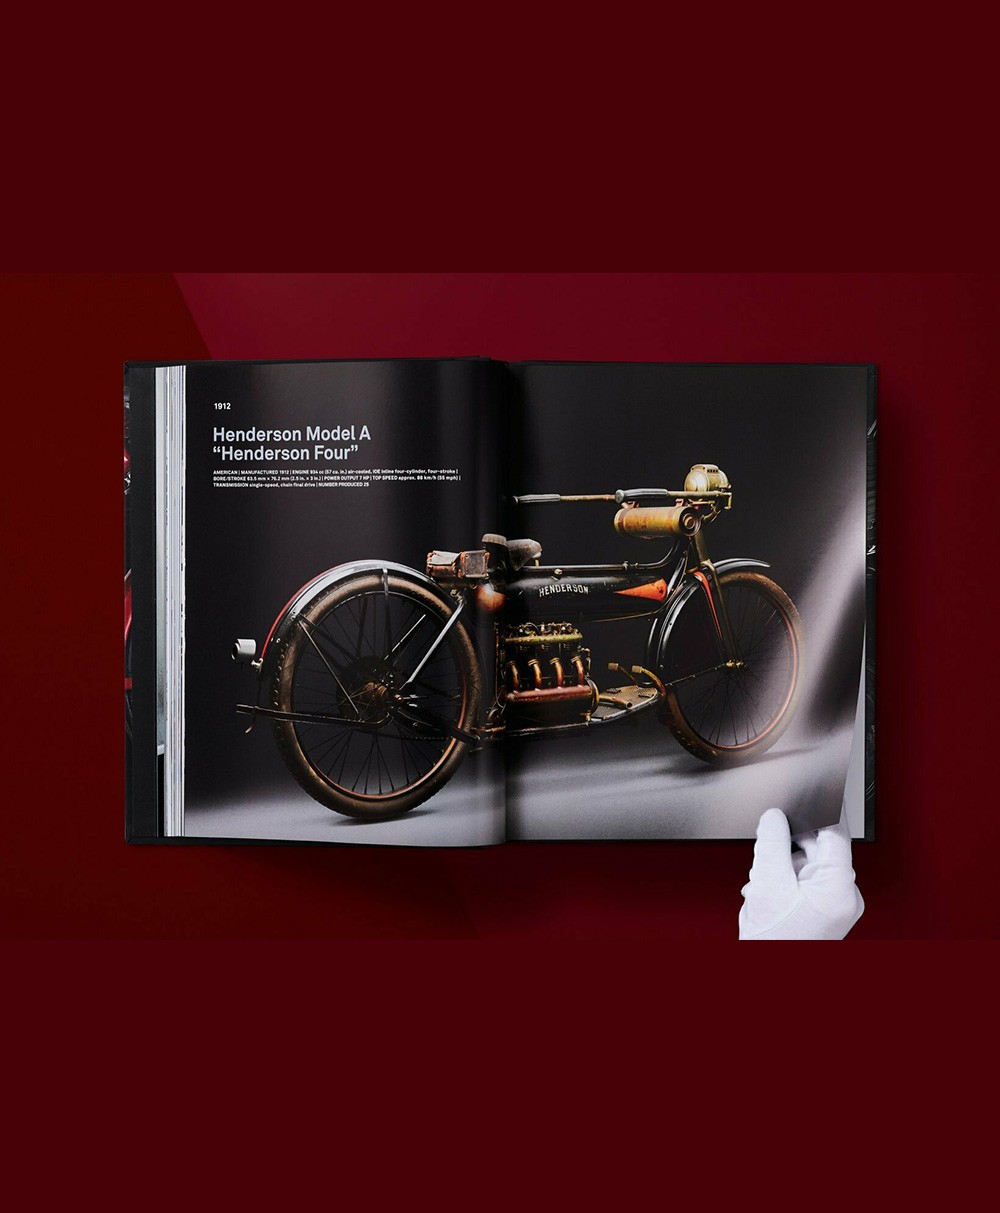 Produktbild des Bildbandes Ultimate Collector Motorcycles von Taschen Verlag - RAUM concept store